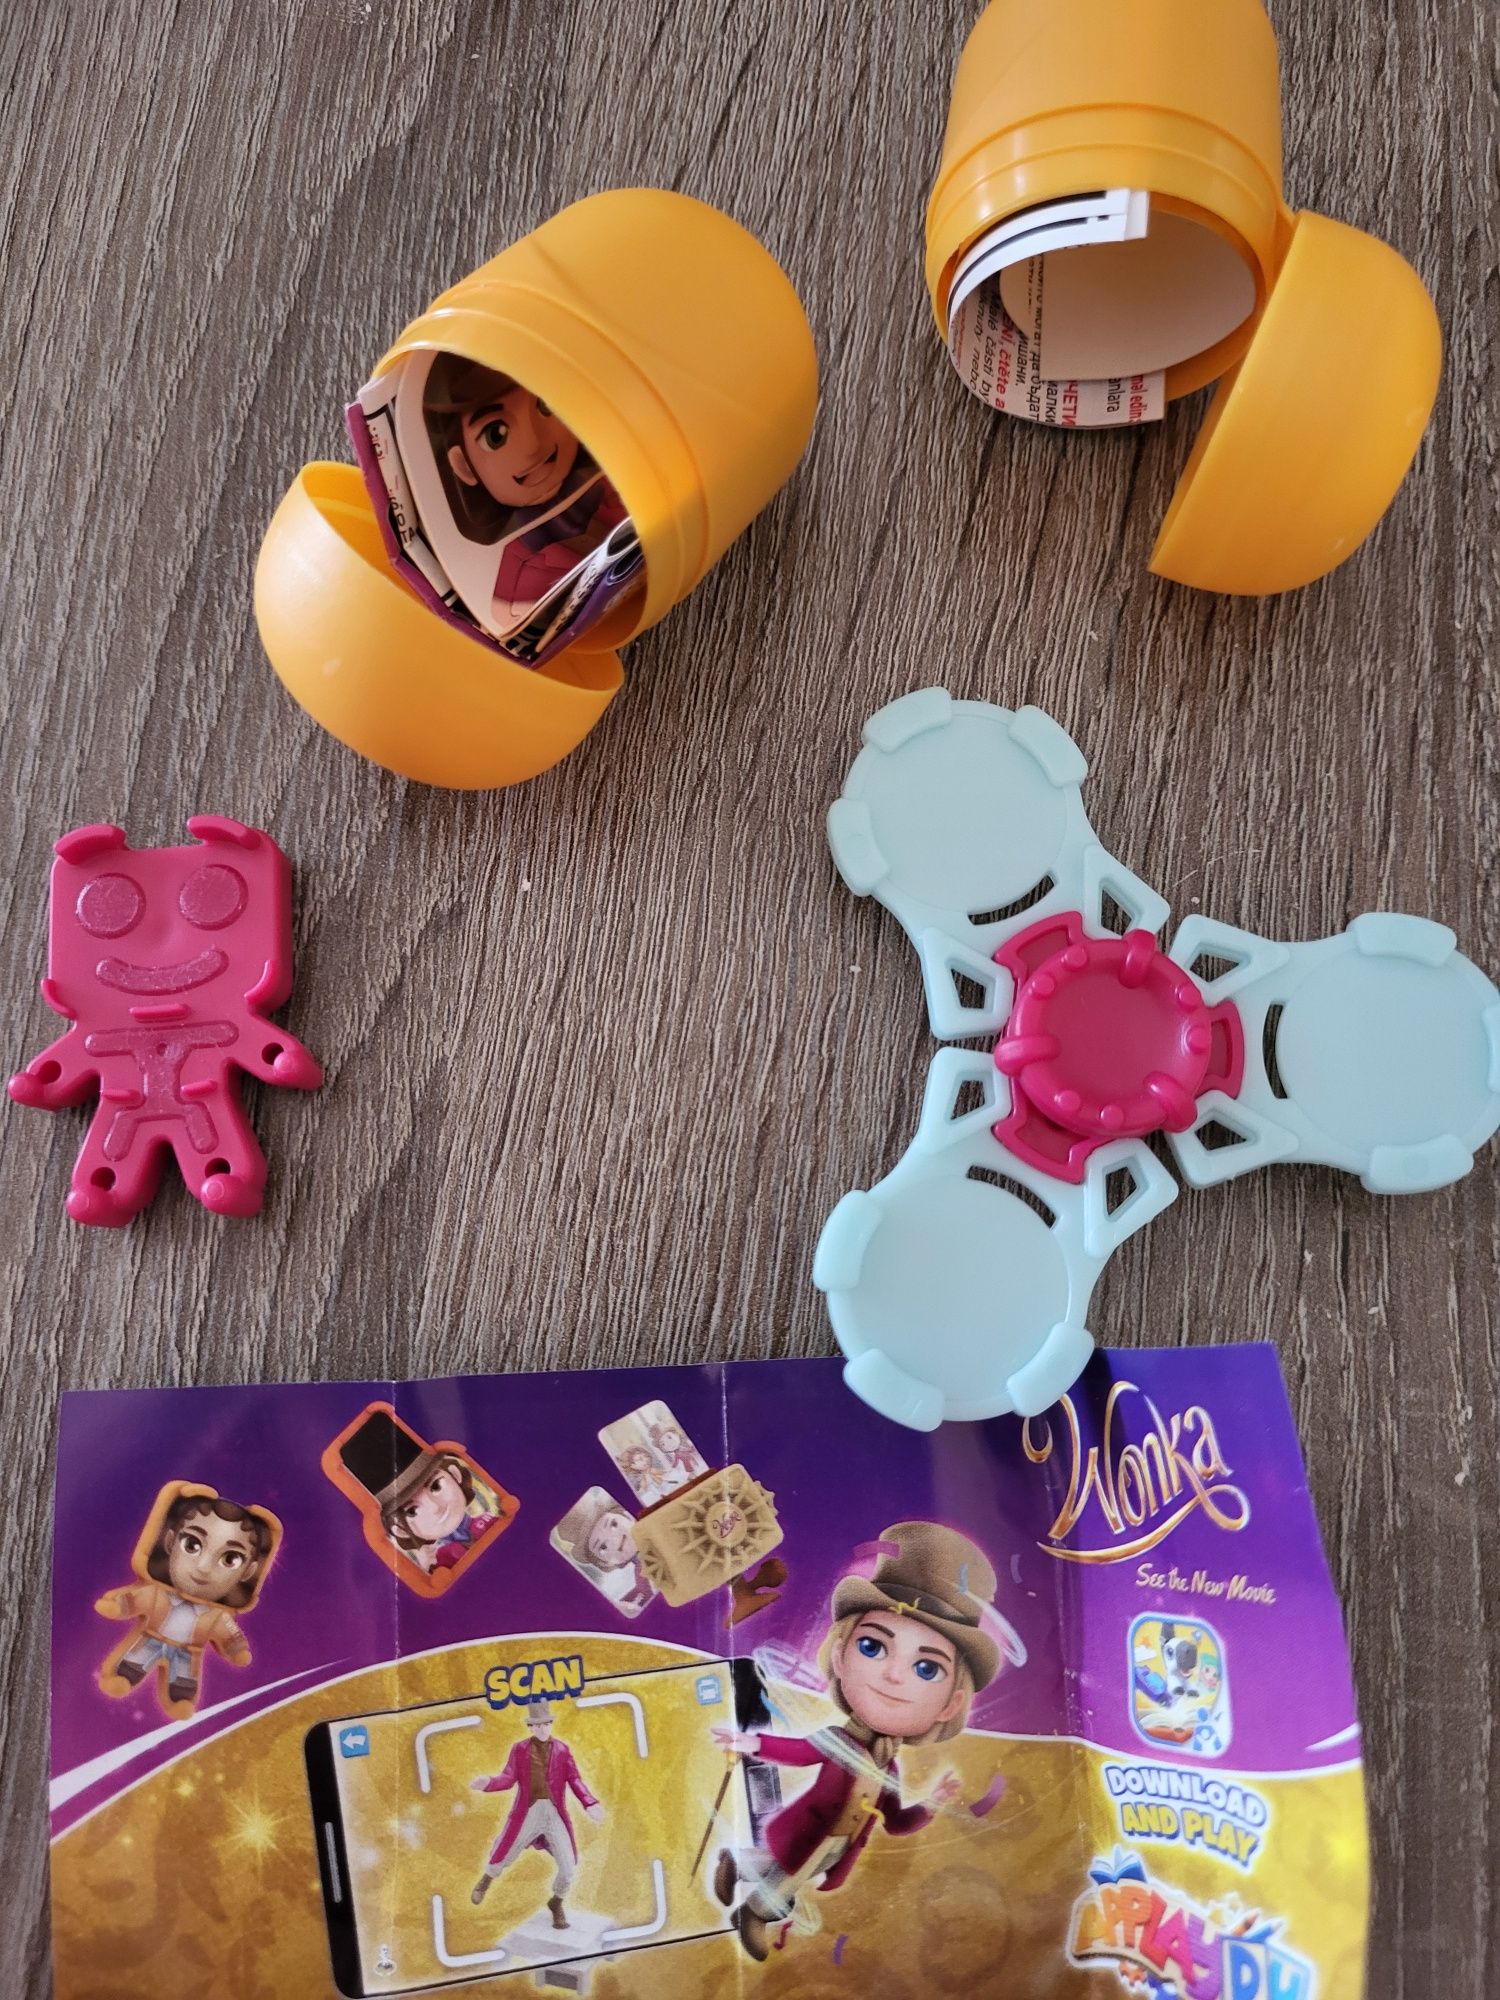 W. Wonka jajko Kinder niespodzianka spiner figurka zabawkanowy